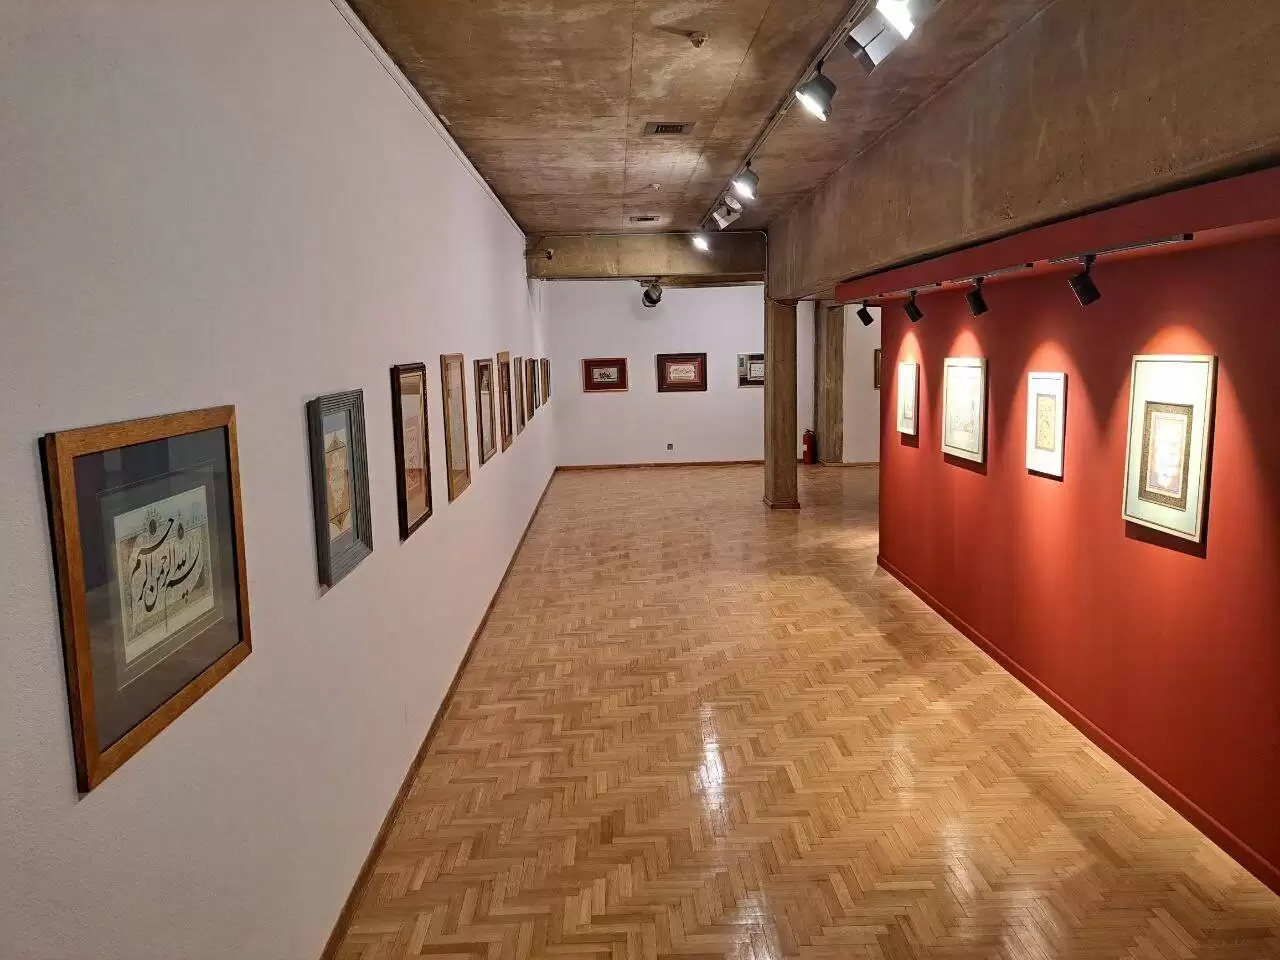 نمایشگاه تخصصی هنرهای قرآنی، (روایت باران) در فرهنگسرای نیاوران گشایش یافت